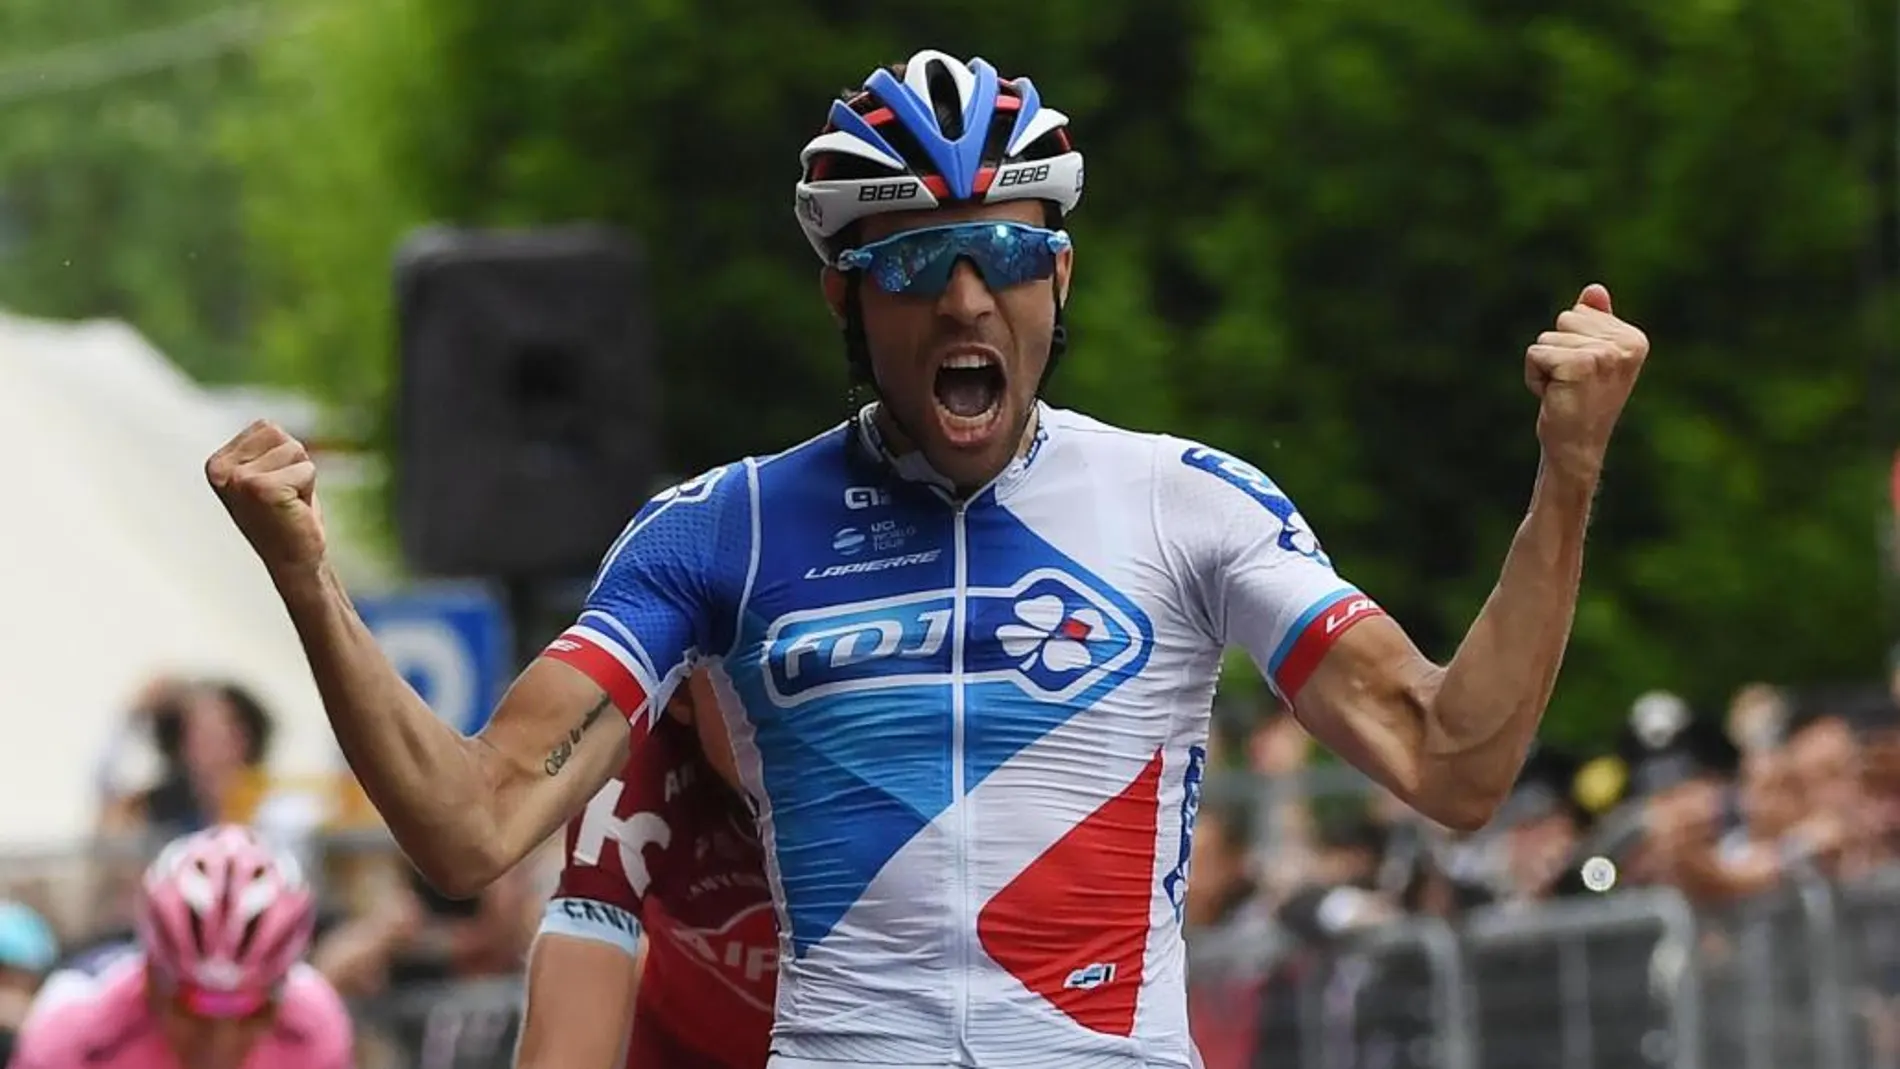 Pinot celebrando la victoria de la penúltima etapa del Giro